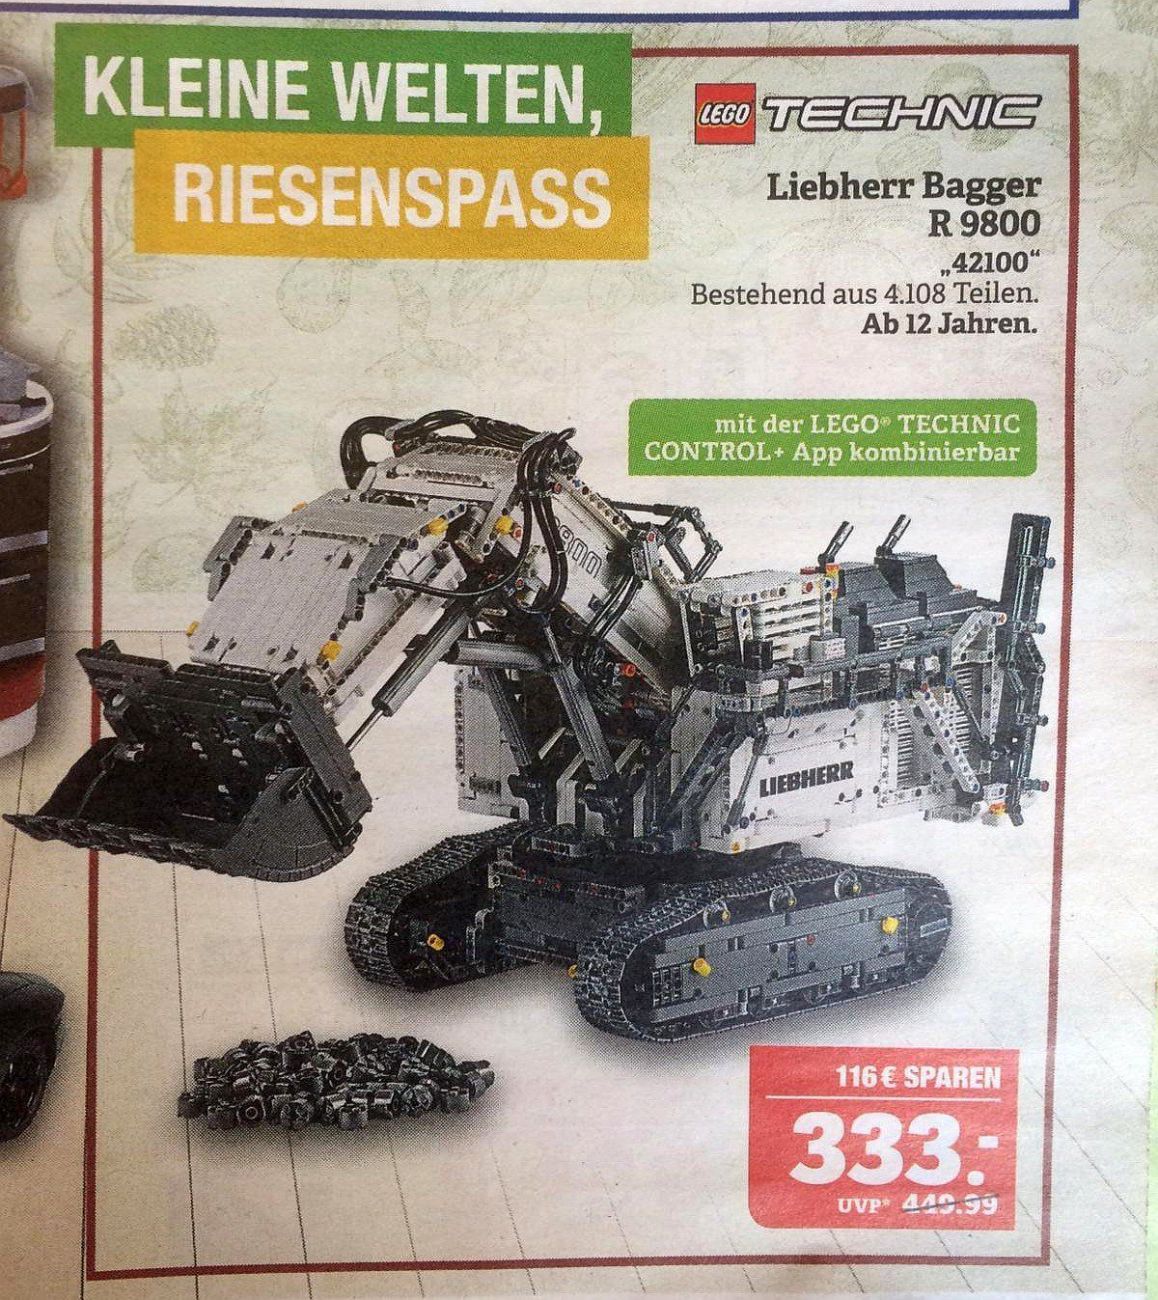 LEGO Technic 42100 Liebherr R9800 für 333 Euro im Angebot